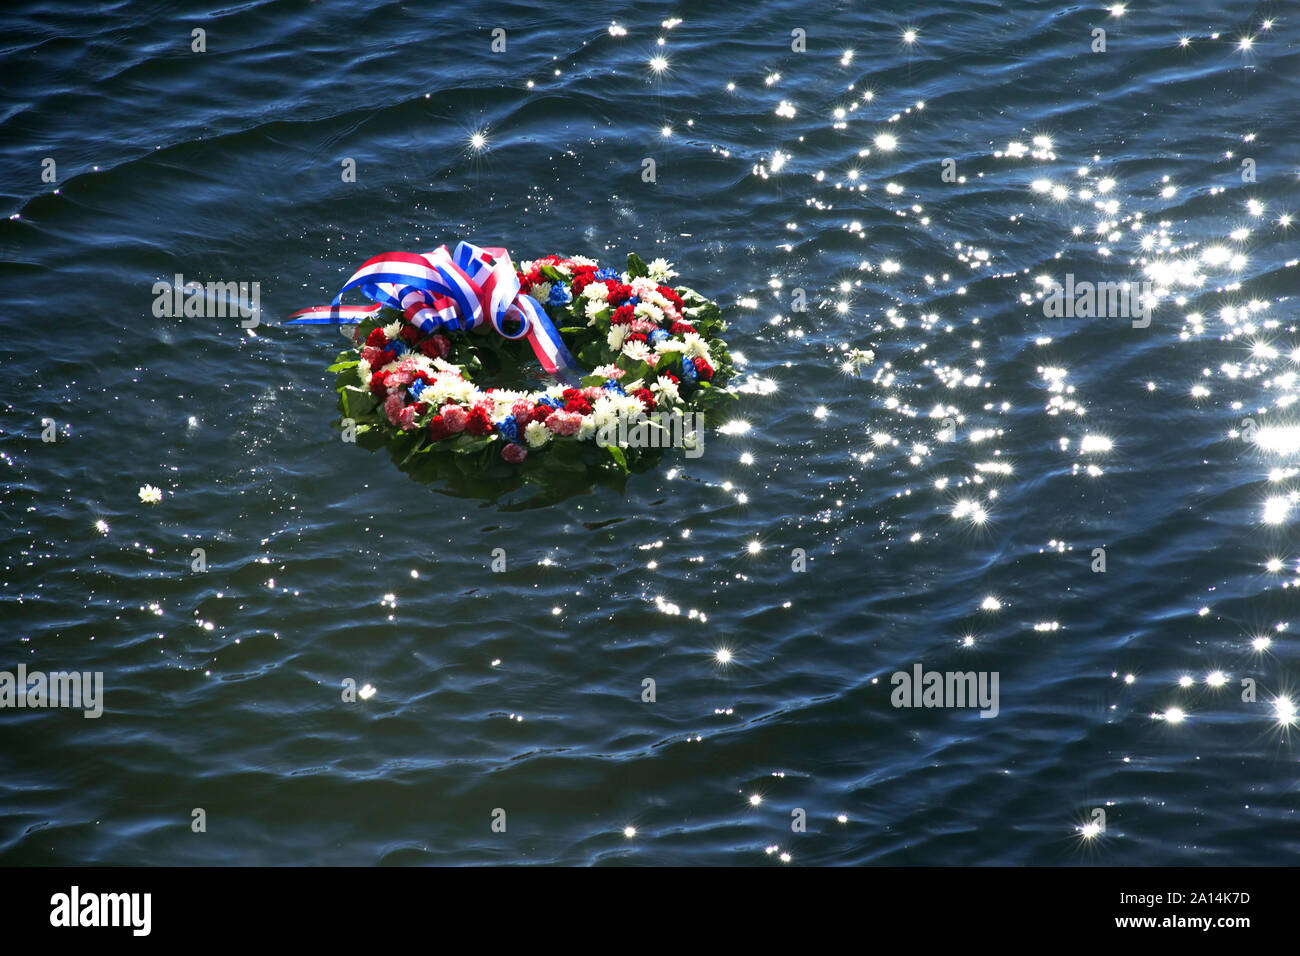 Eine florale Kranz ist im Wasser platziert, das Leben während der Angriff auf Pearl Harbor verloren Memorialize. Stockfoto